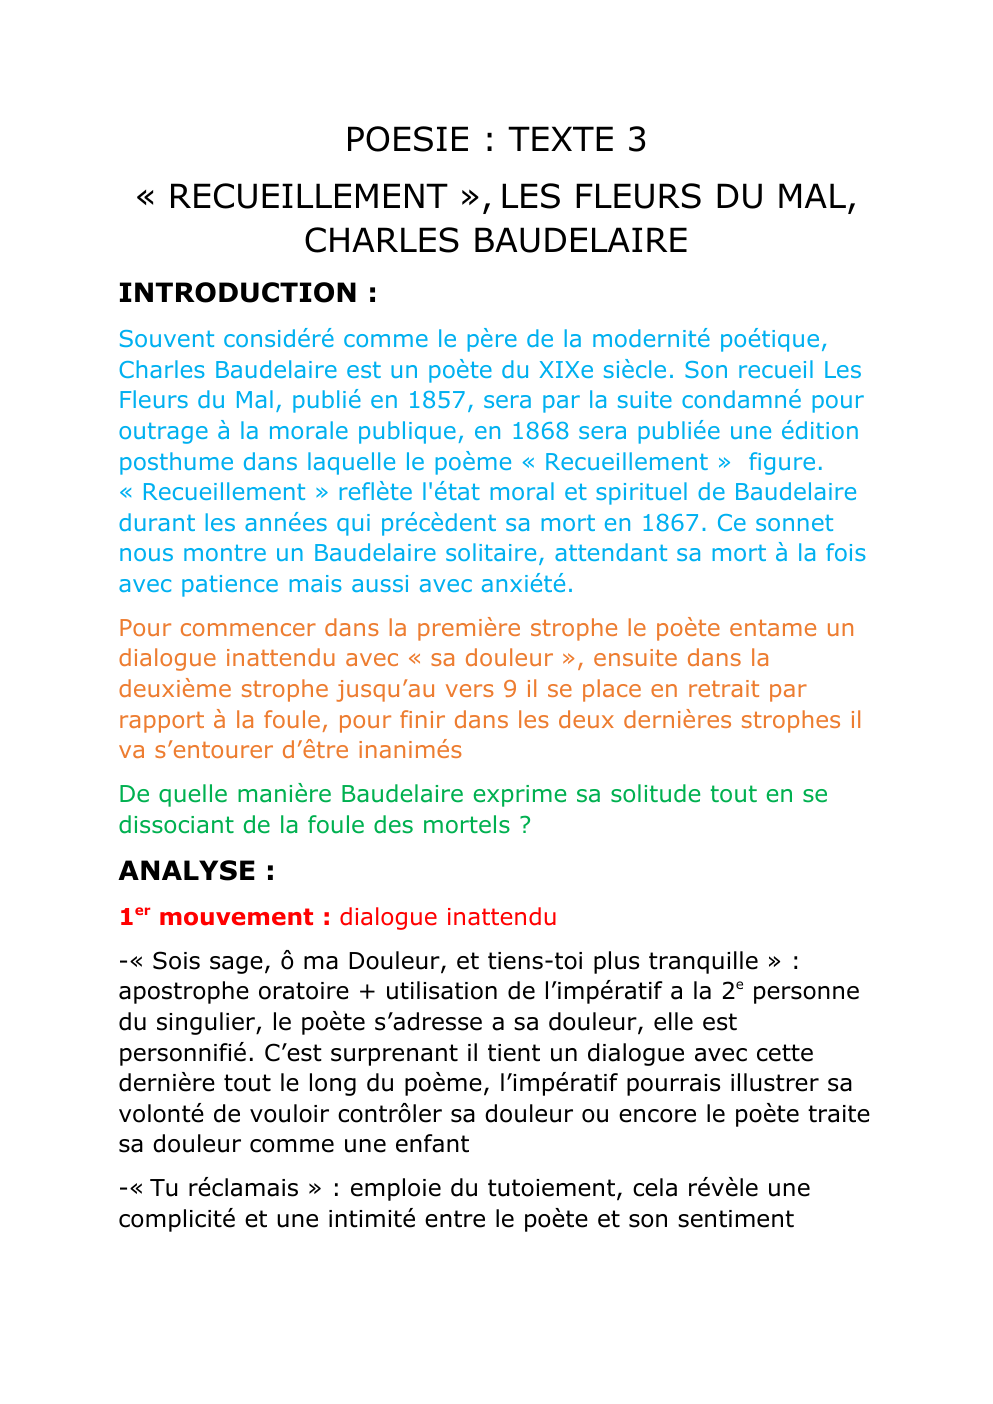 Prévisualisation du document analyse linéaire "recueillement" Baudelaire